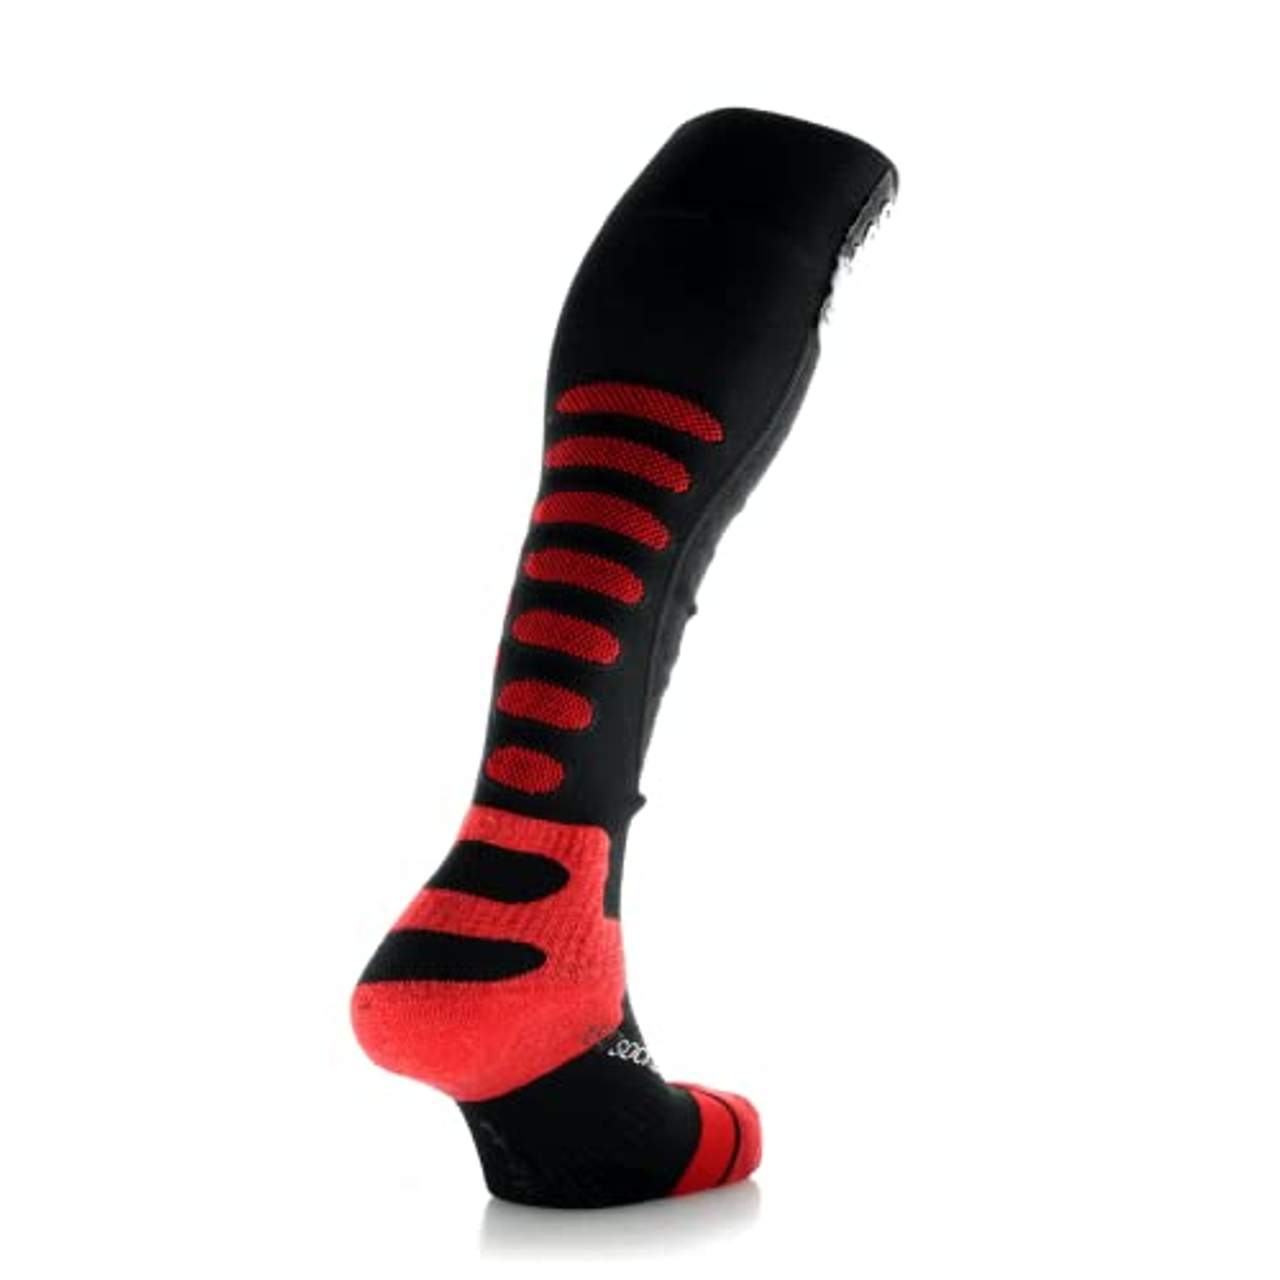 Lenz Set Heat Socks 5.0 Toe Cap